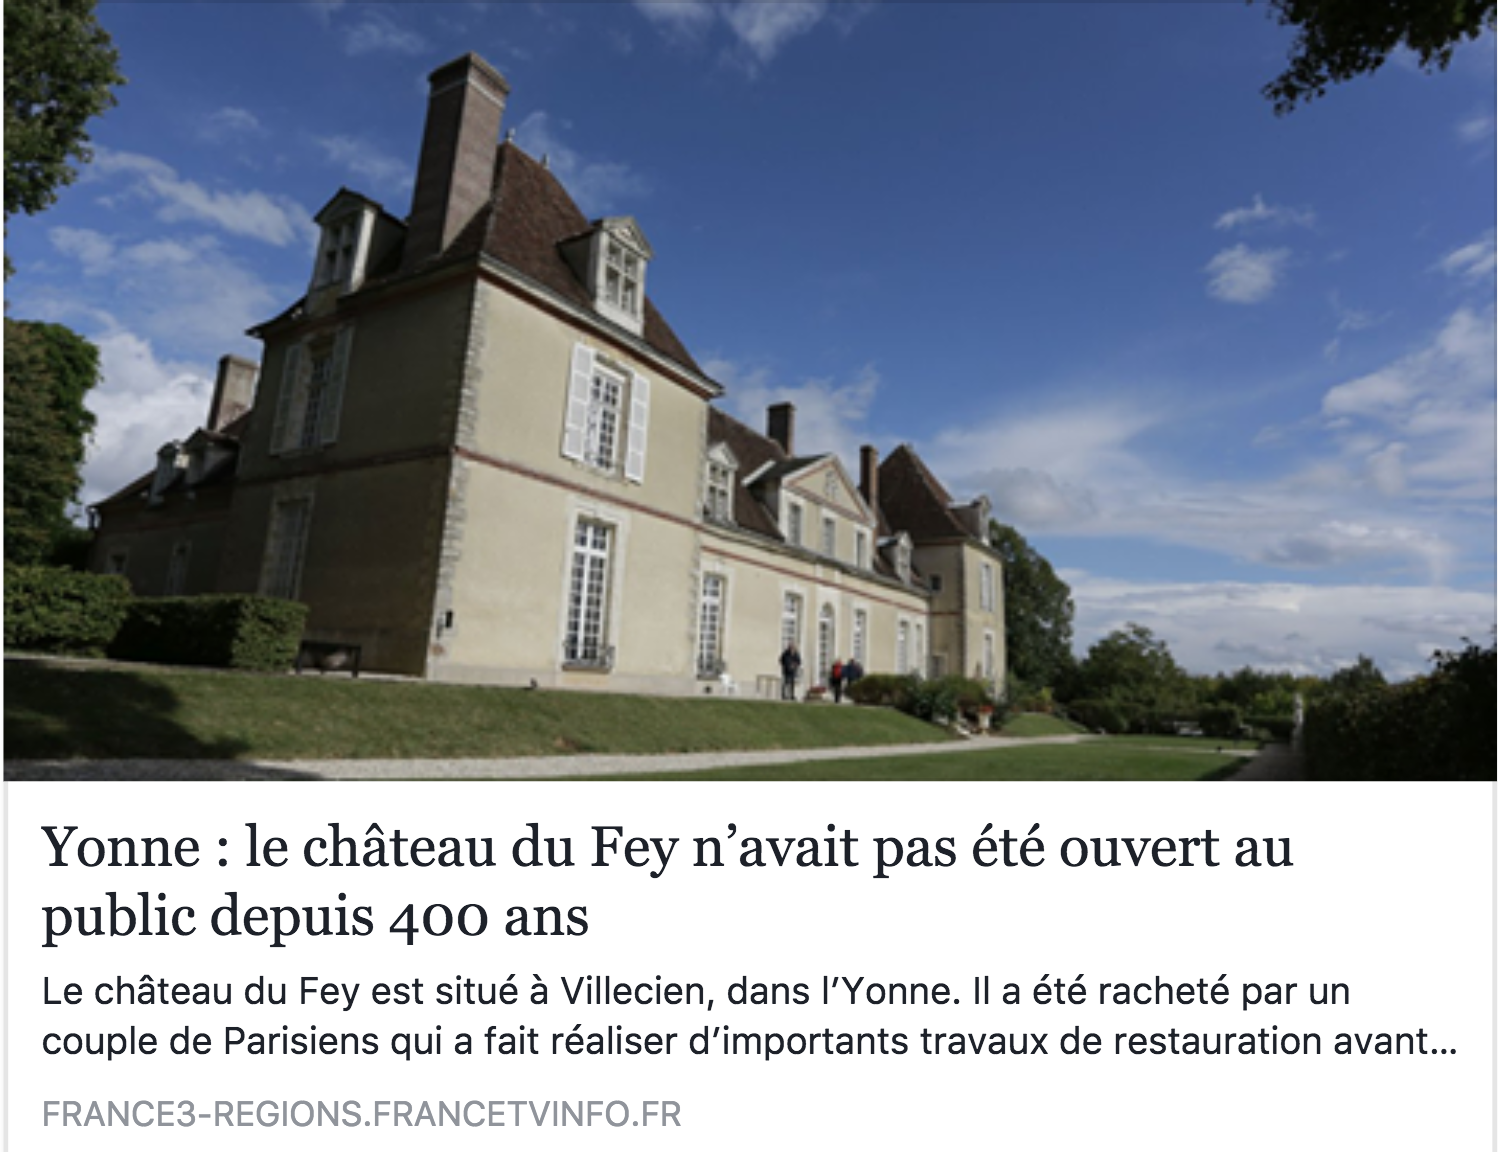 http://france3-regions.francetvinfo.fr/bourgogne-franche-comte/yonne-chateau-du-fey-n-avait-pas-ete-ouvert-au-public-400-ans-1329495.html